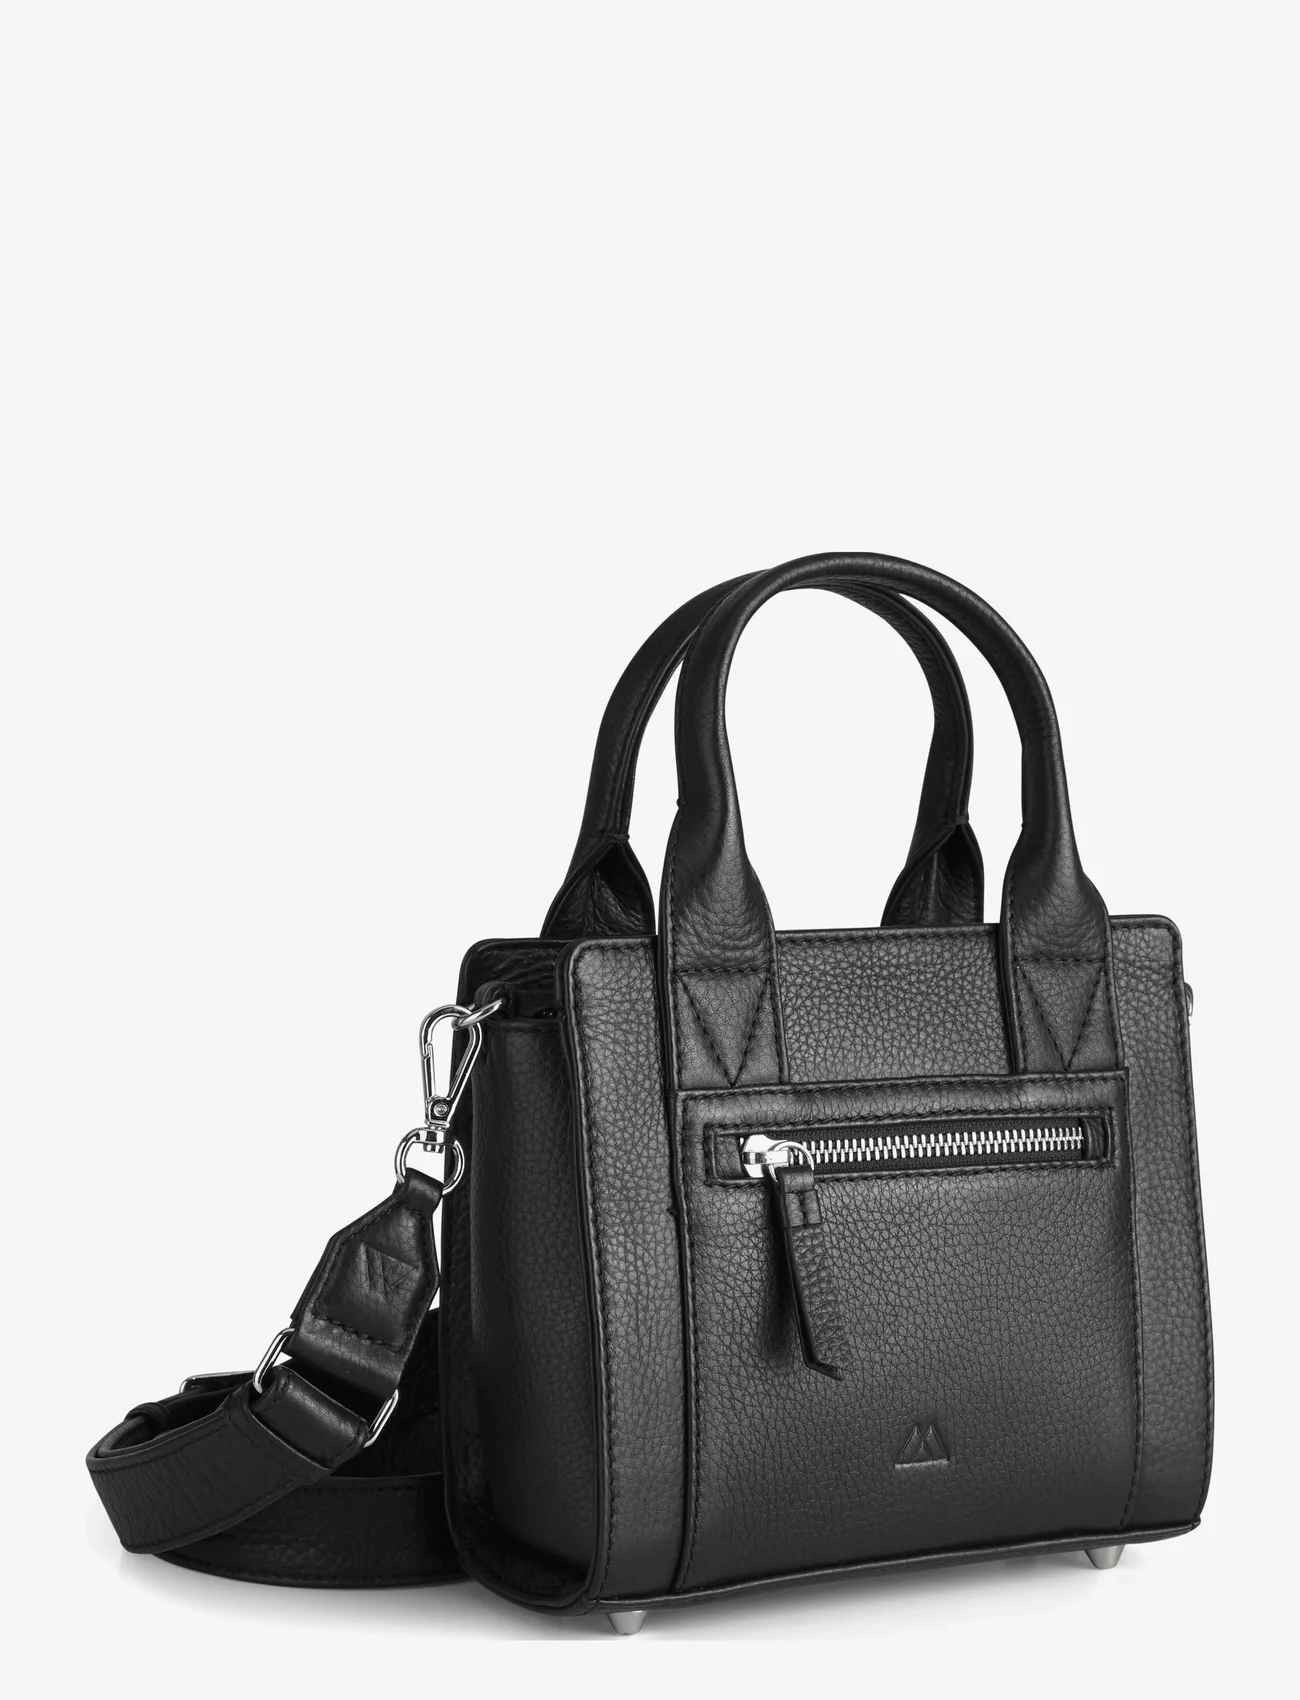 Markberg - MaikaMBG Mini Bag, Grain - festklær til outlet-priser - black - 1